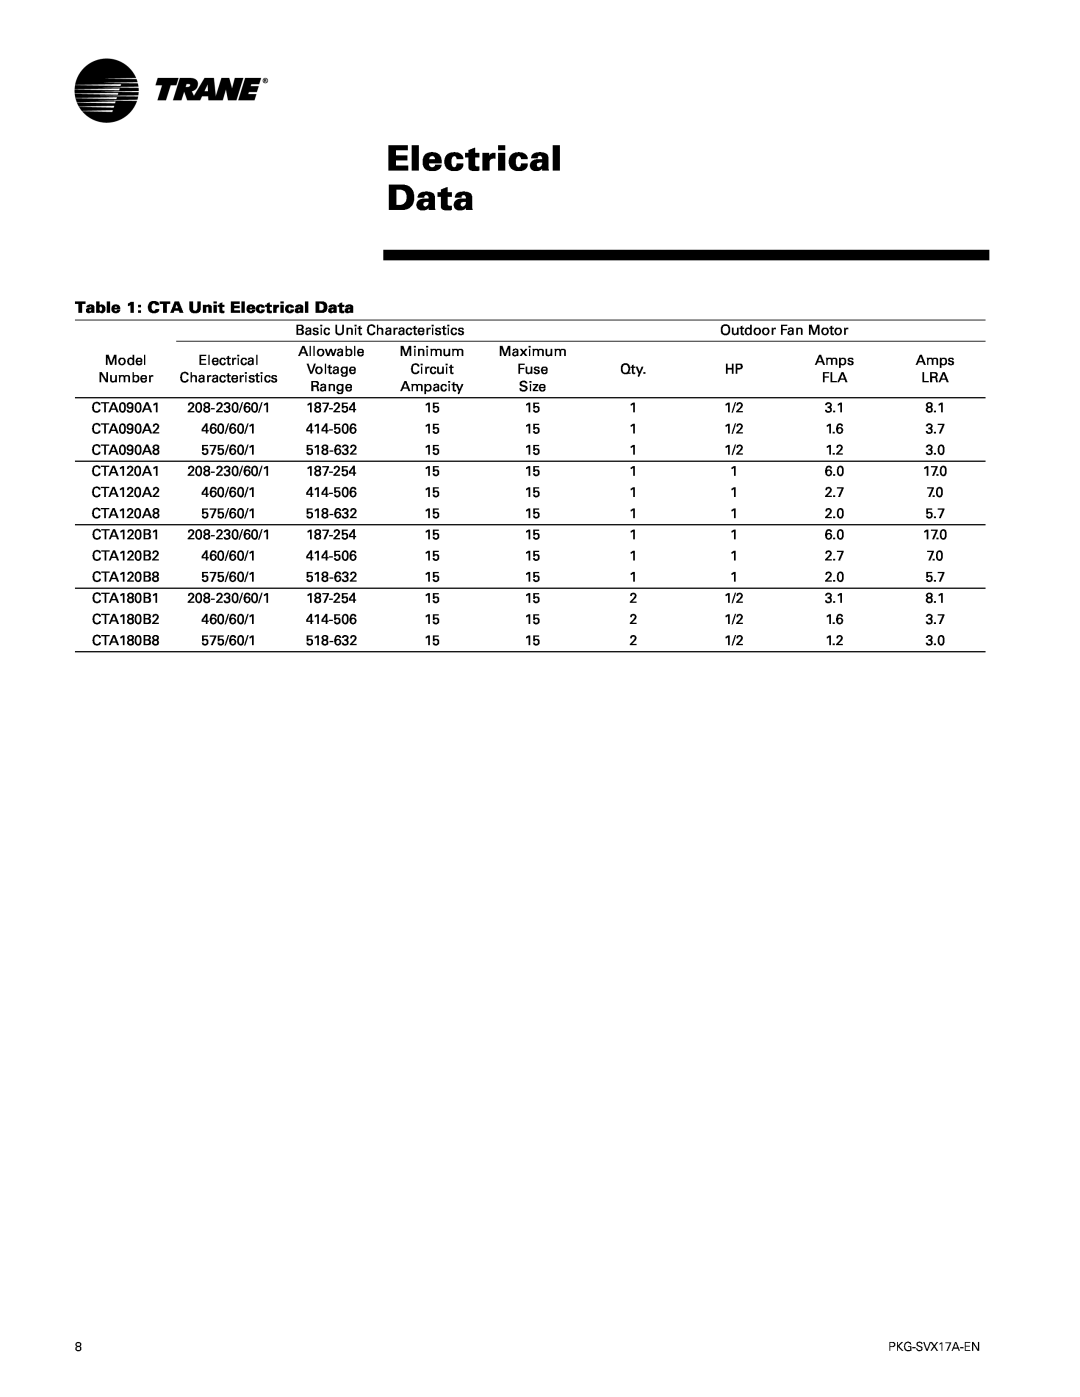 Trane PKG-SVX17A-EN manual CTA Unit Electrical Data 